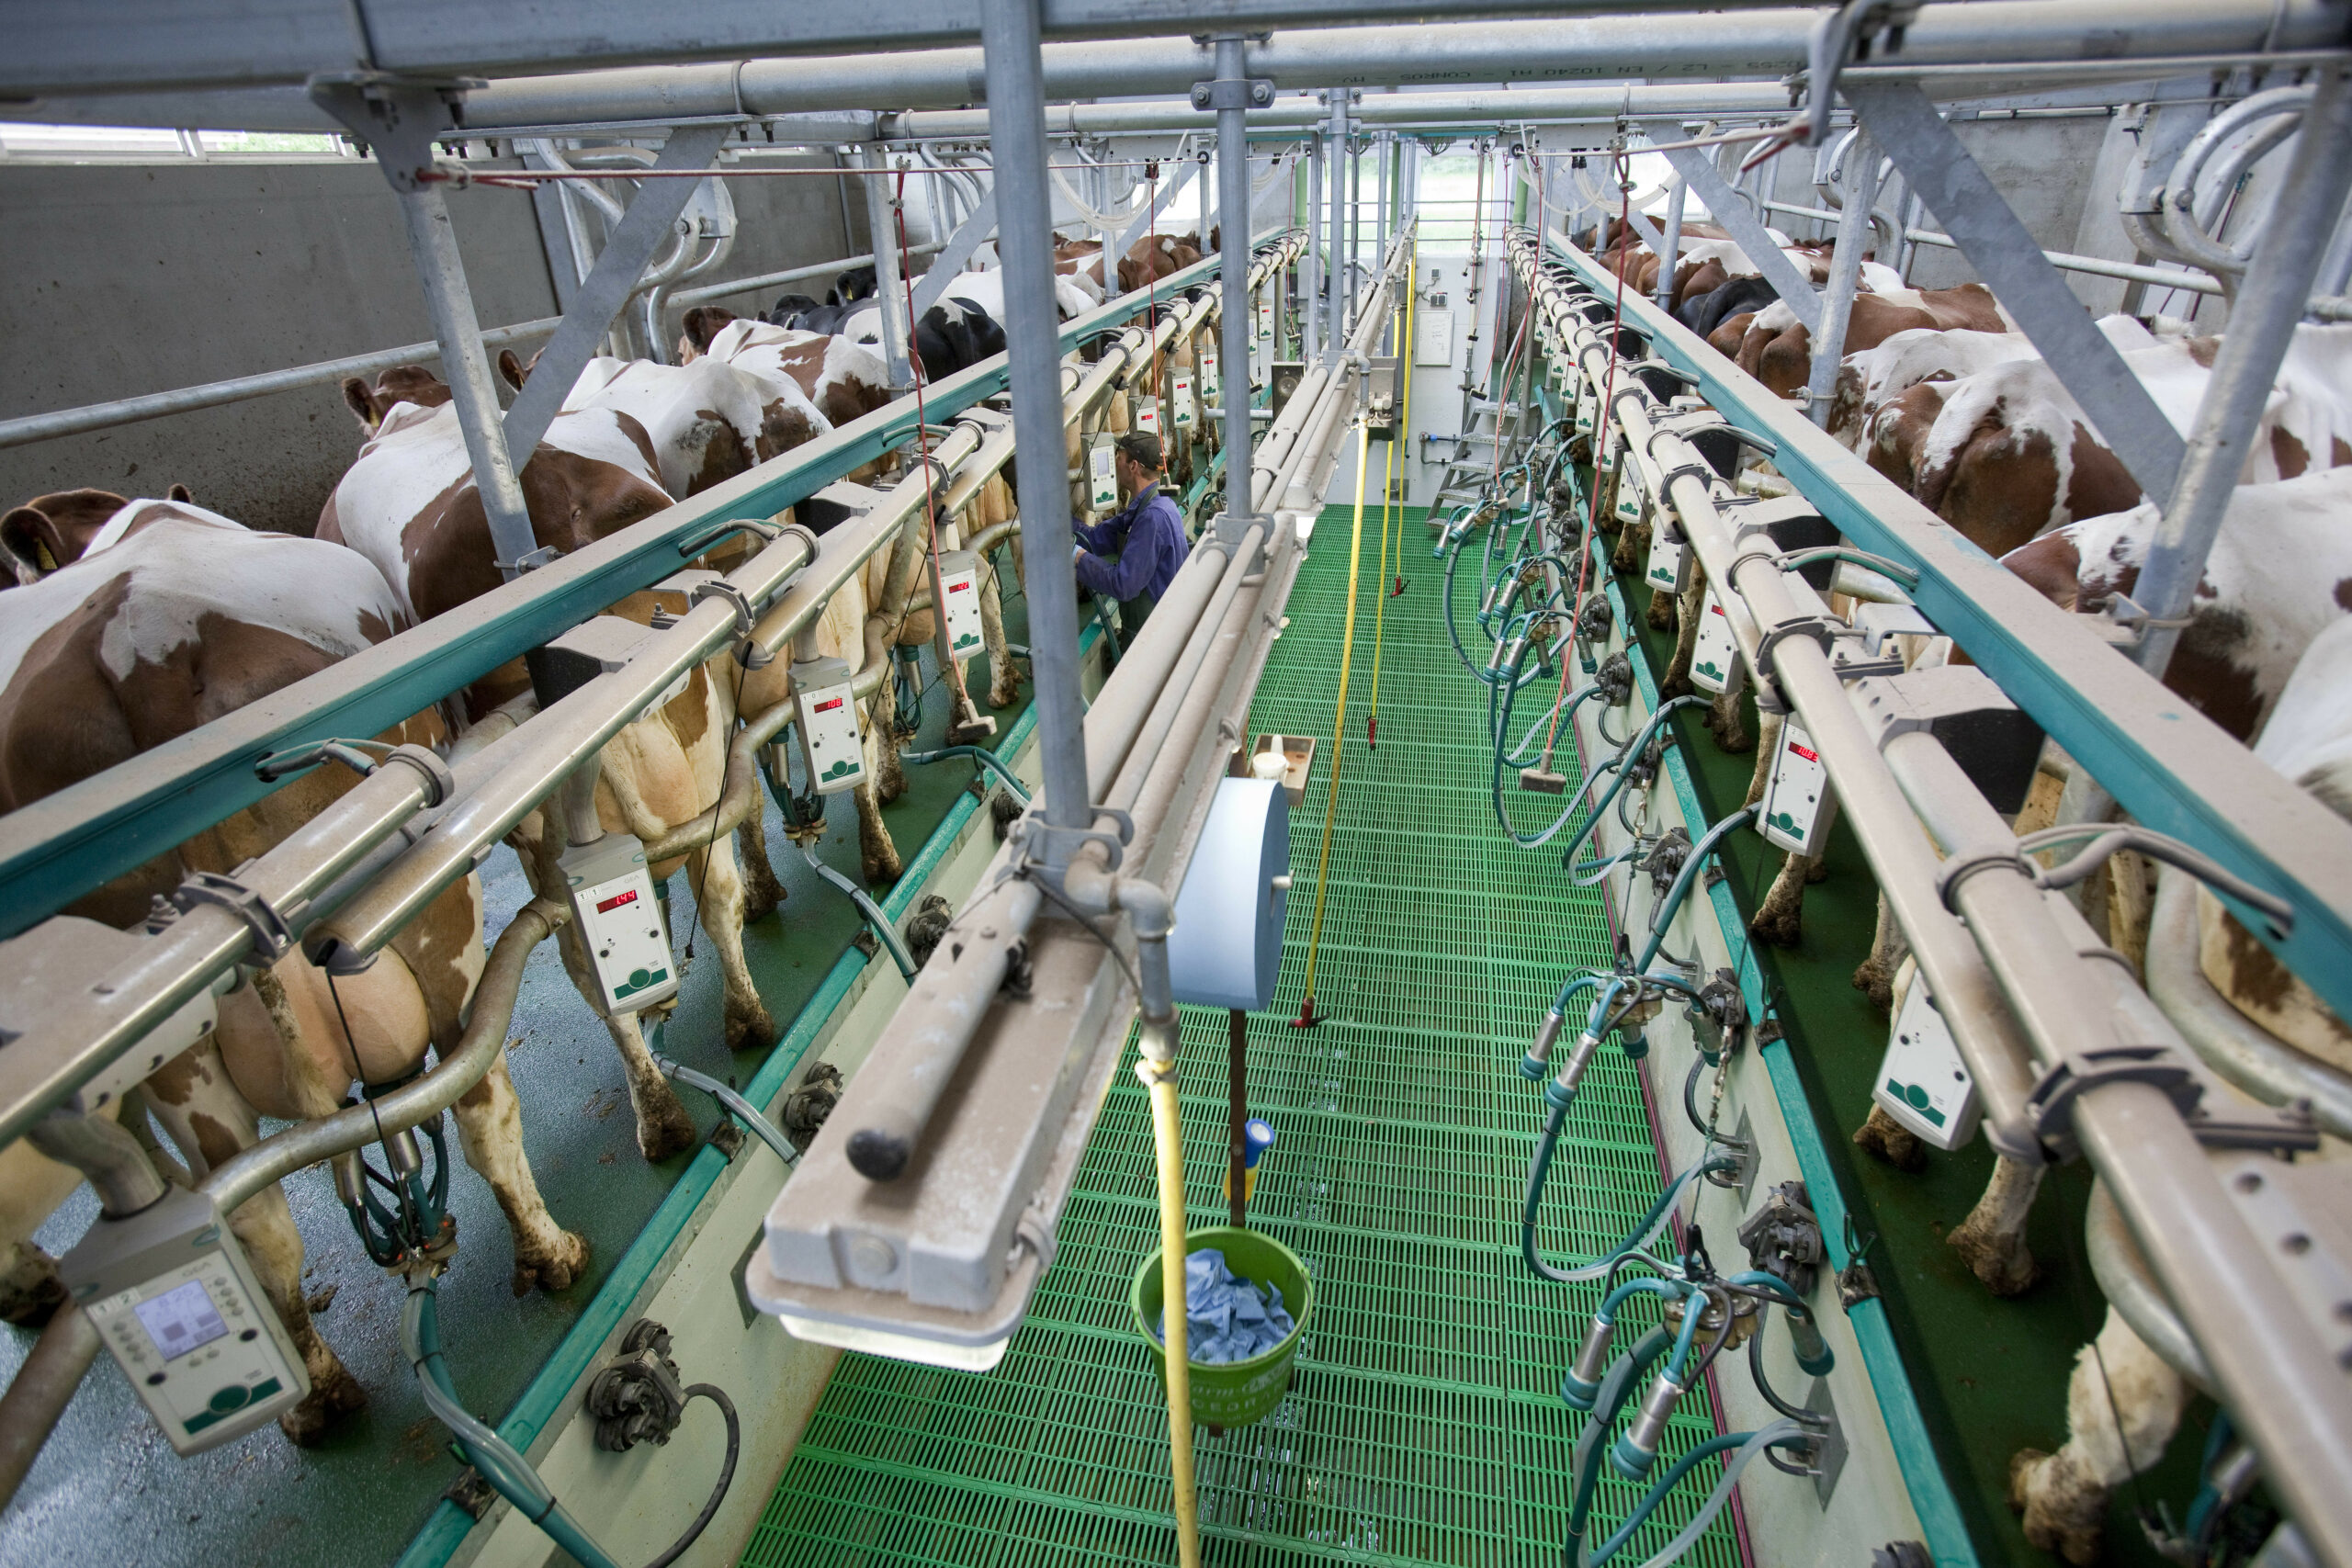 Door automatisering ontstaan nieuwe risico s op melkveebedrijven. Elektra in de stal geeft meer kans op brand. Ook kunnen de gevolgen van stroomuitval groot zijn.